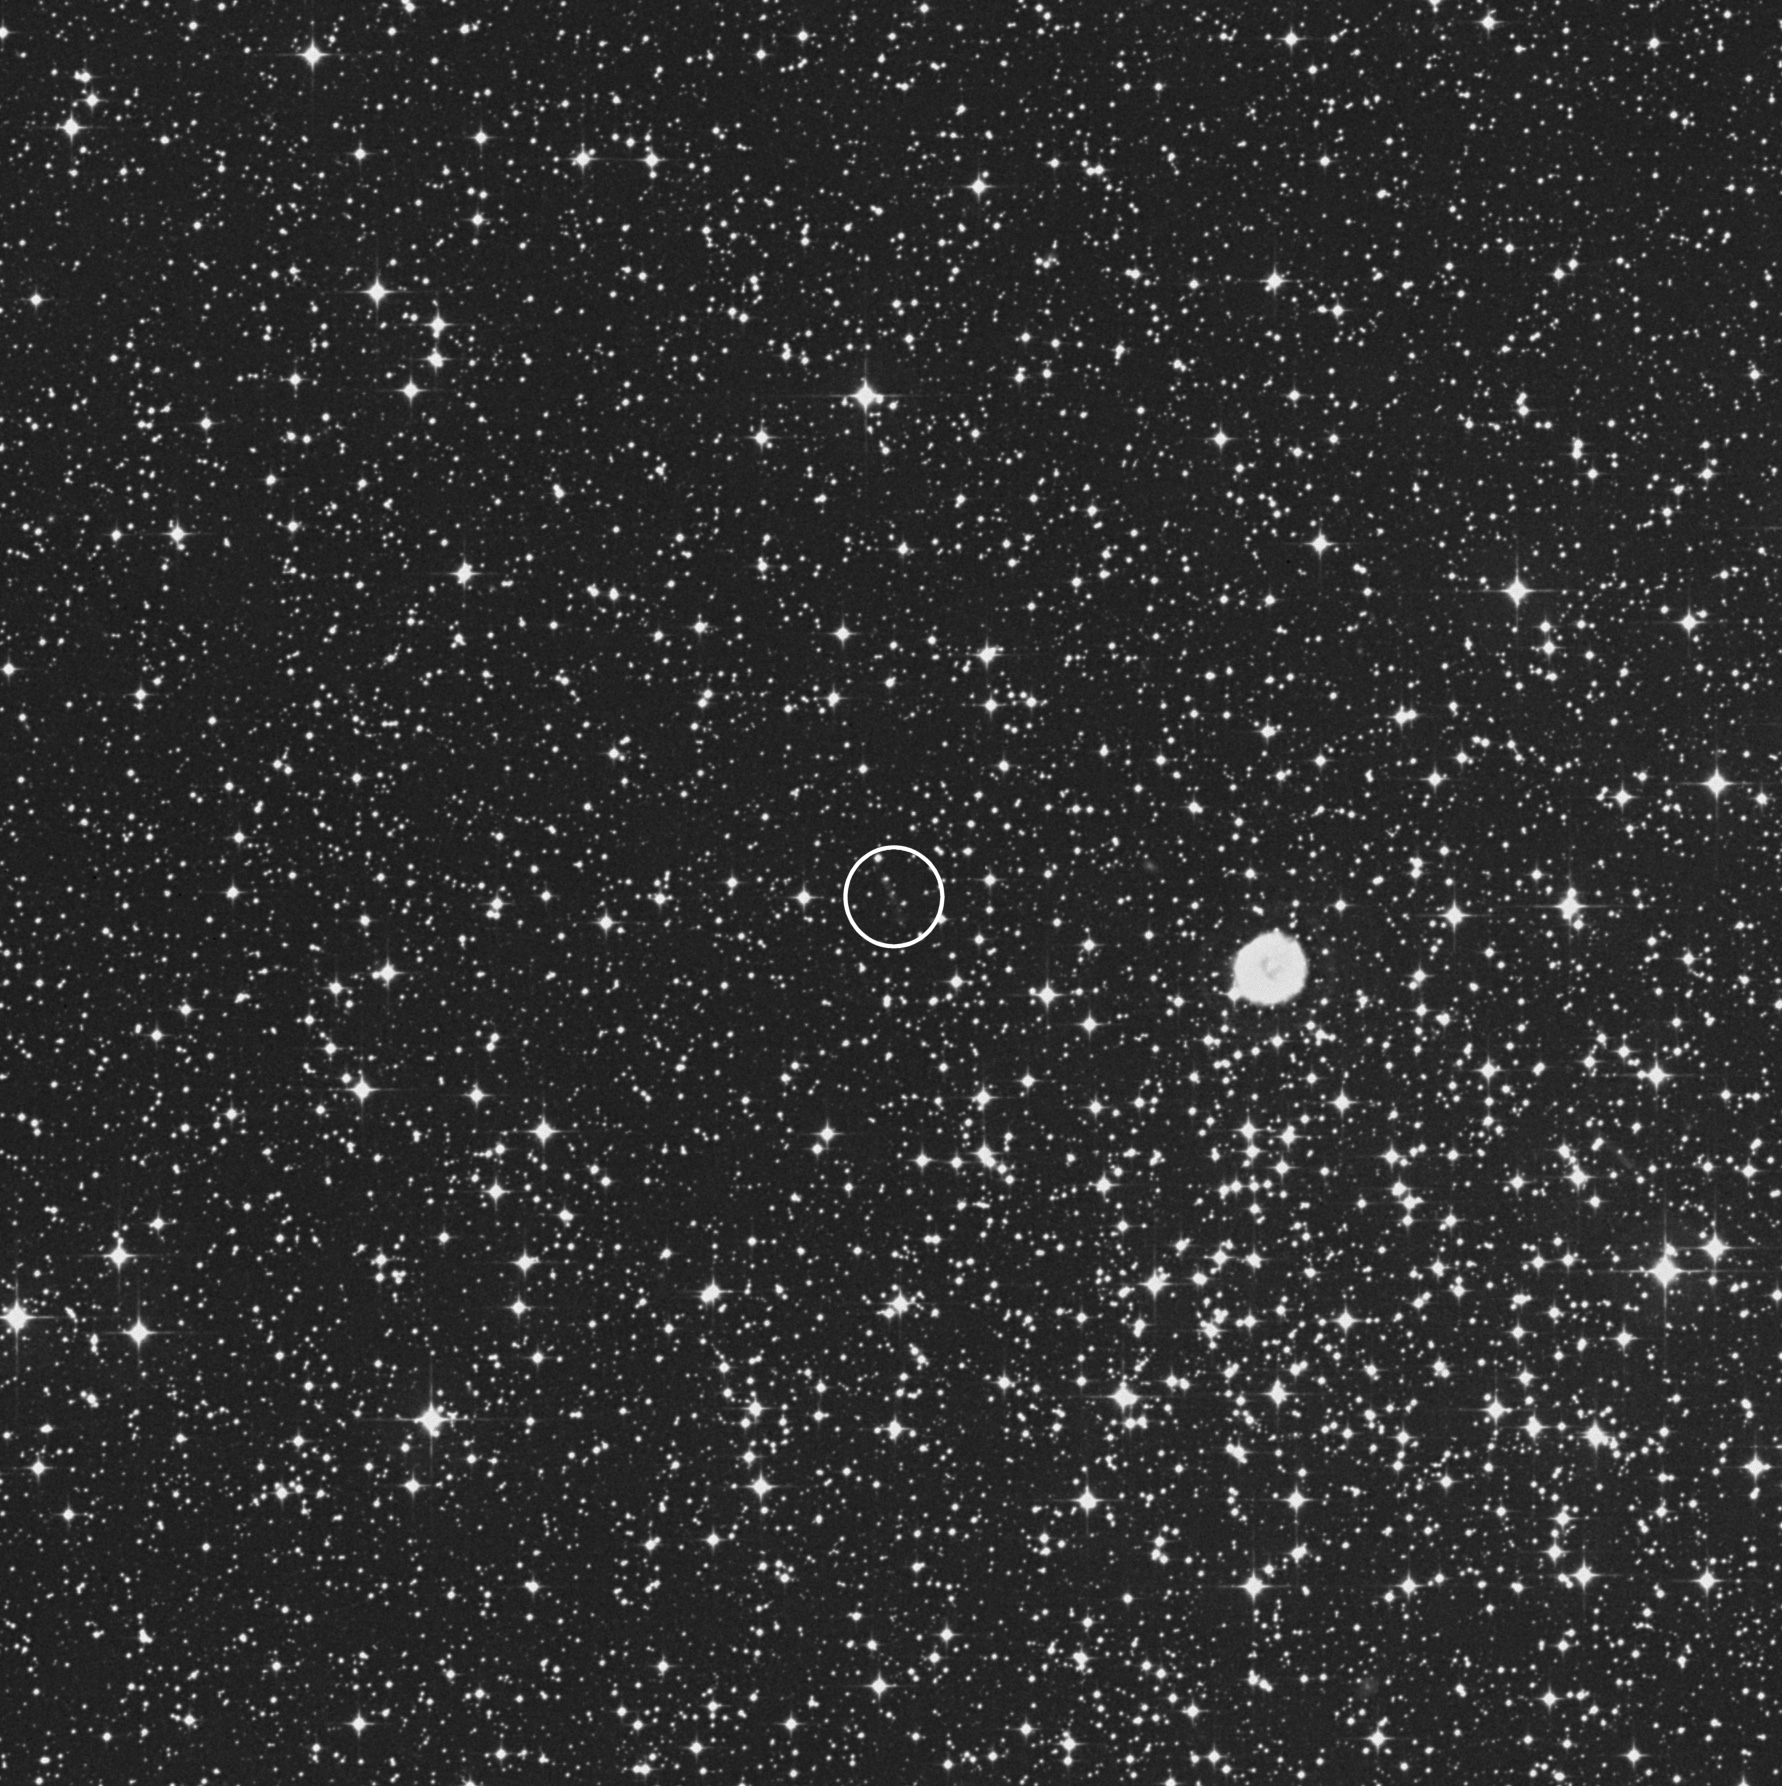 Campo del cielo en el que se encuentra la Nebulosa de la Calabaza o nebulosa del Huevo Podrido, Messier 46. Fuente: ESA; Valentín Bujarrabal (Observatorio Astronómico Nacional, IGN) y sondeo Digitized Sky Survey.